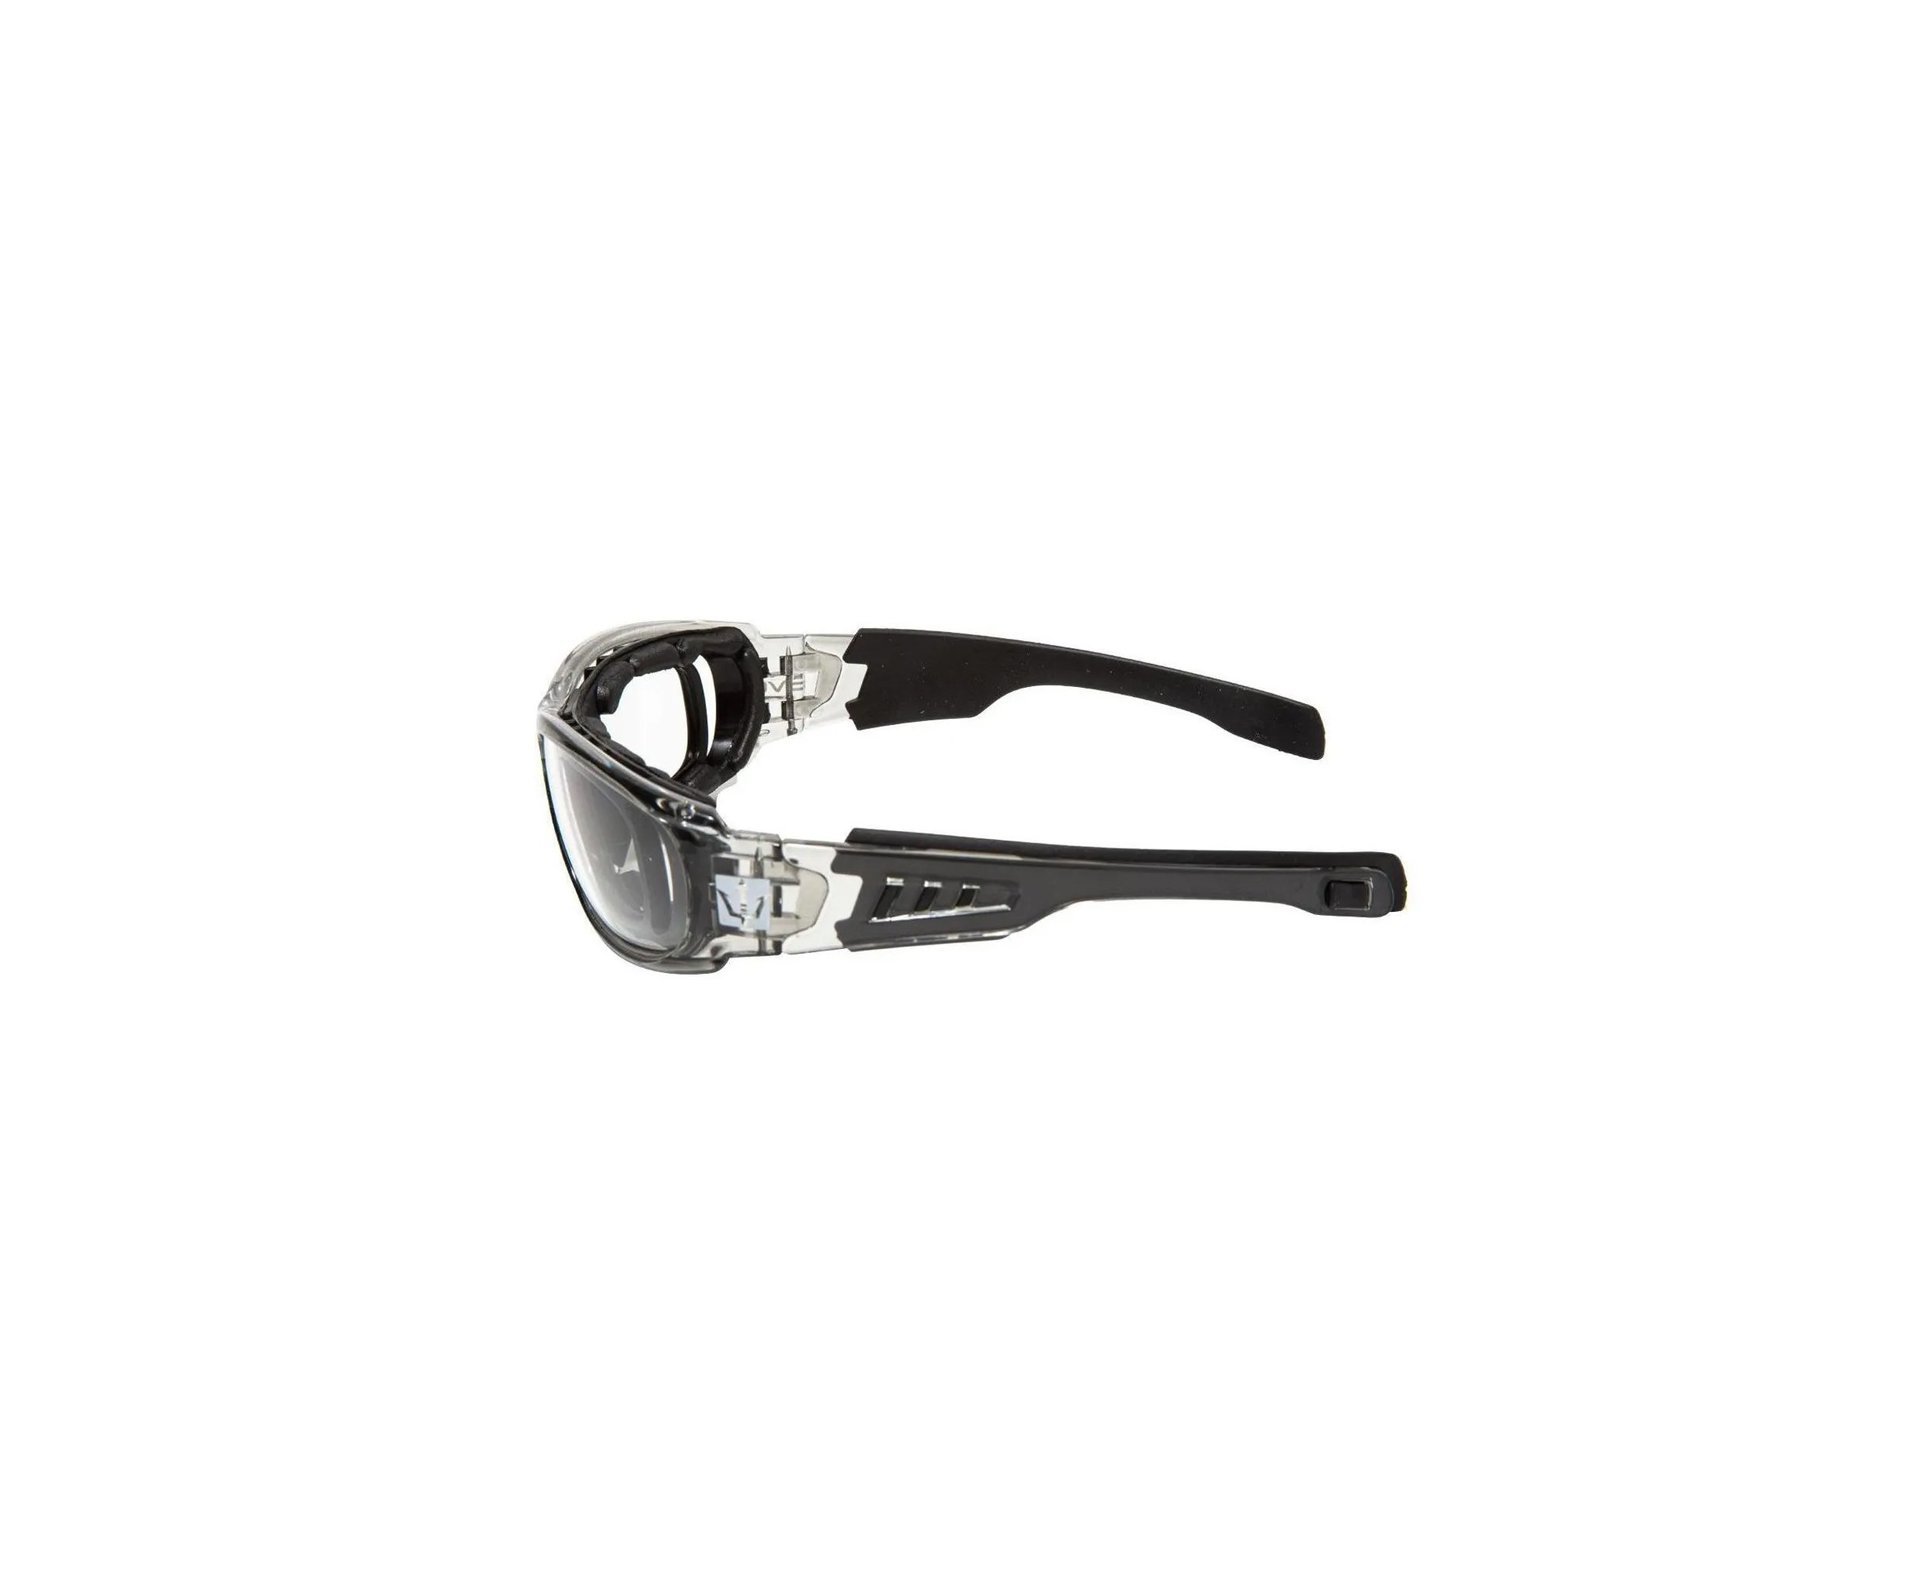 Oculos de Proteção Tatico Sierra Cinza - EVO Tactical